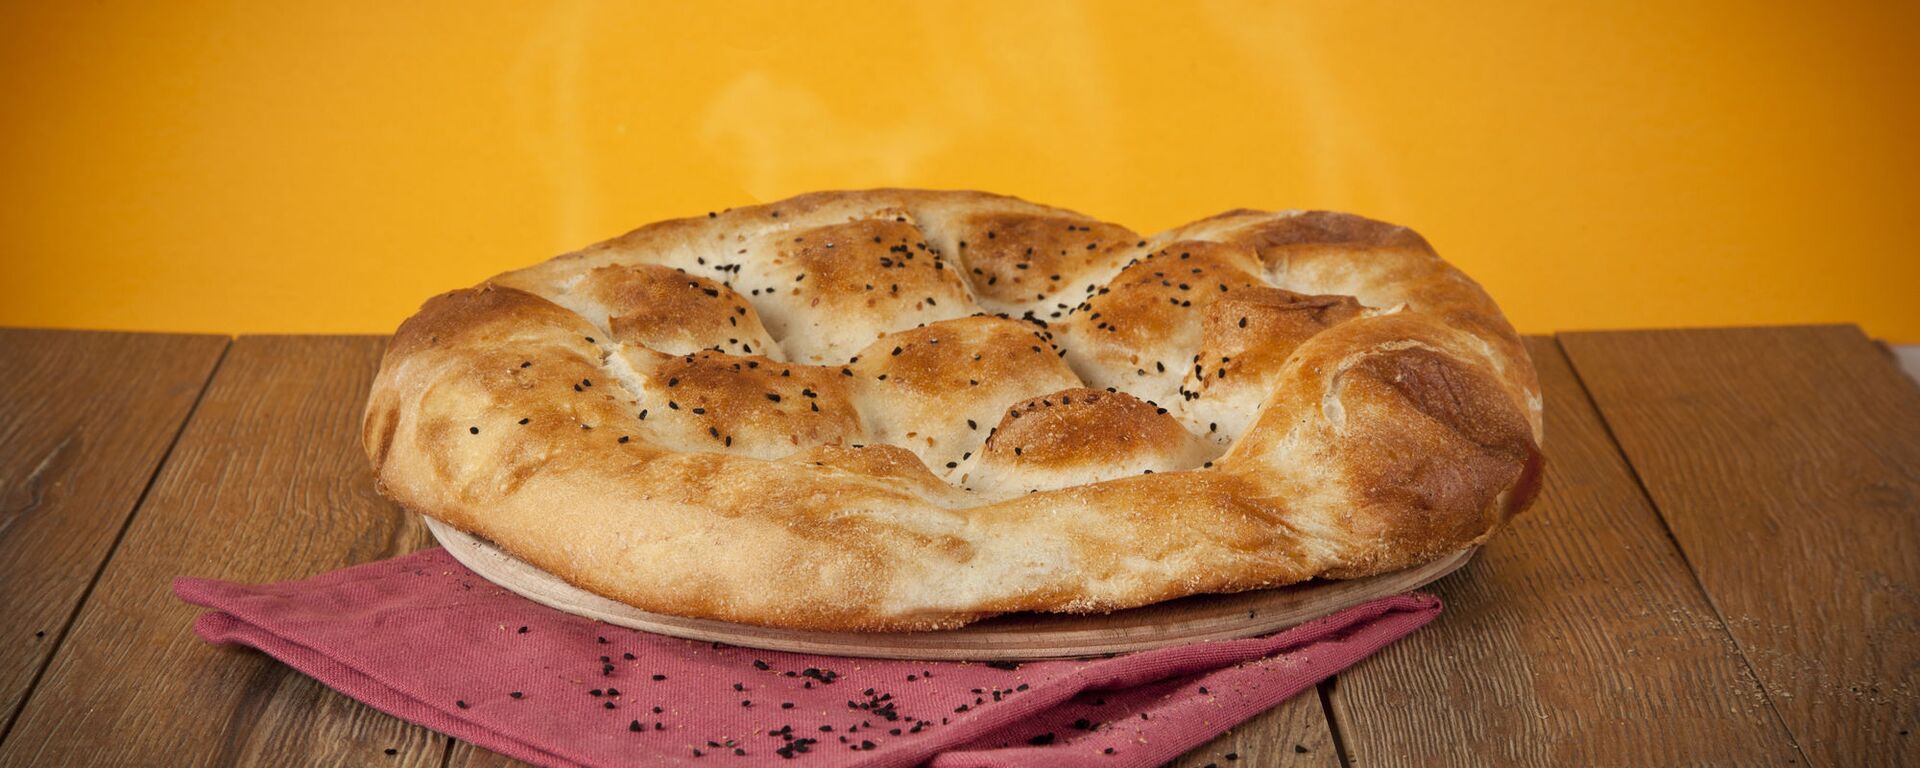 خبز - سبوتنيك عربي, 1920, 11.10.2021